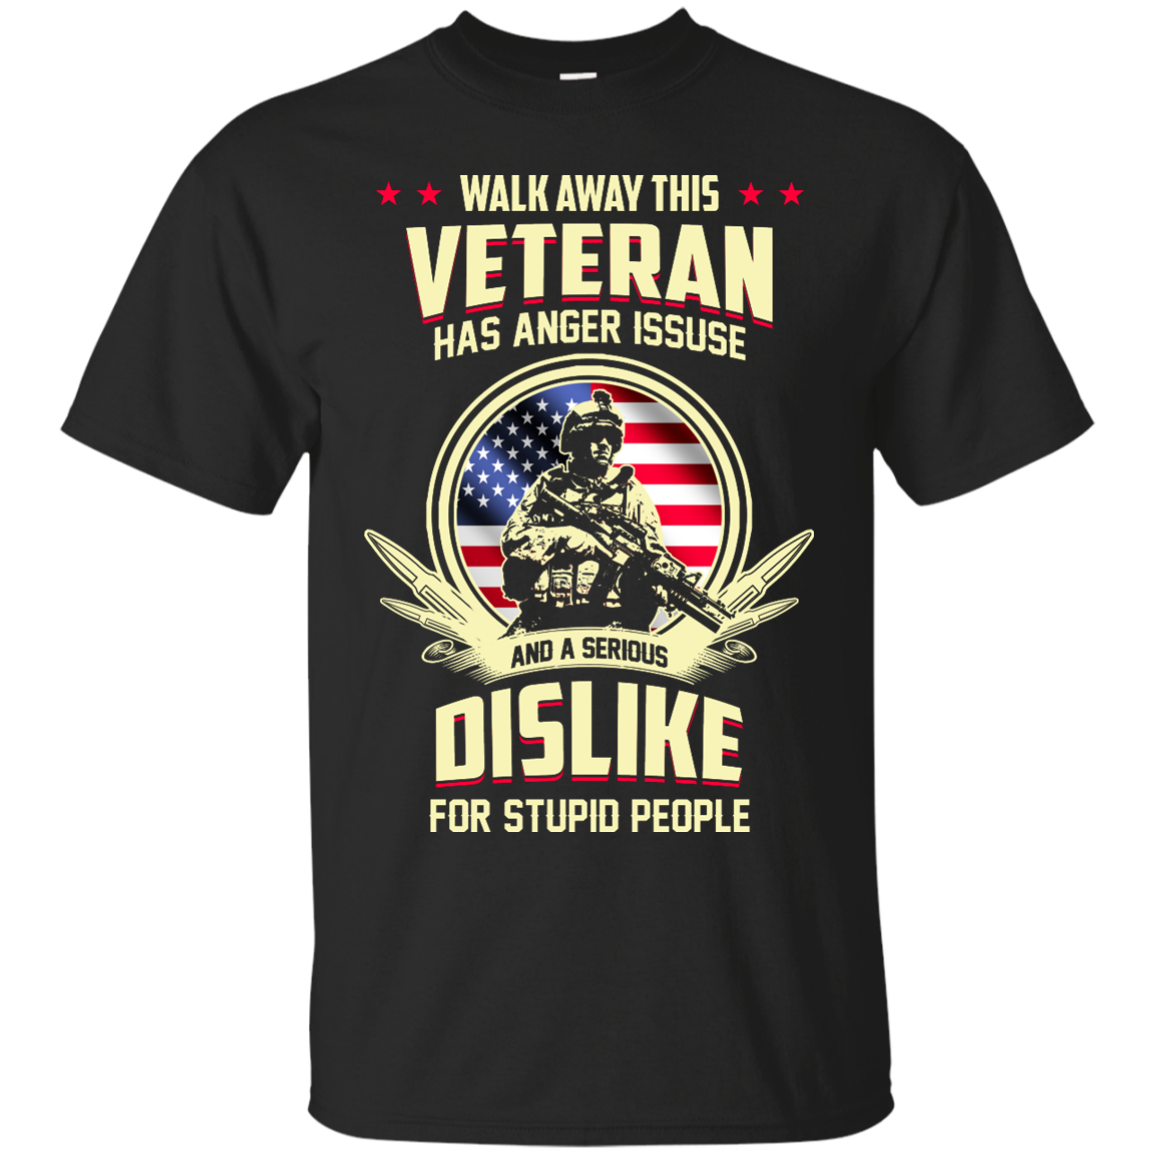 United states veteran vietnam war Shirts - We were best America had ...